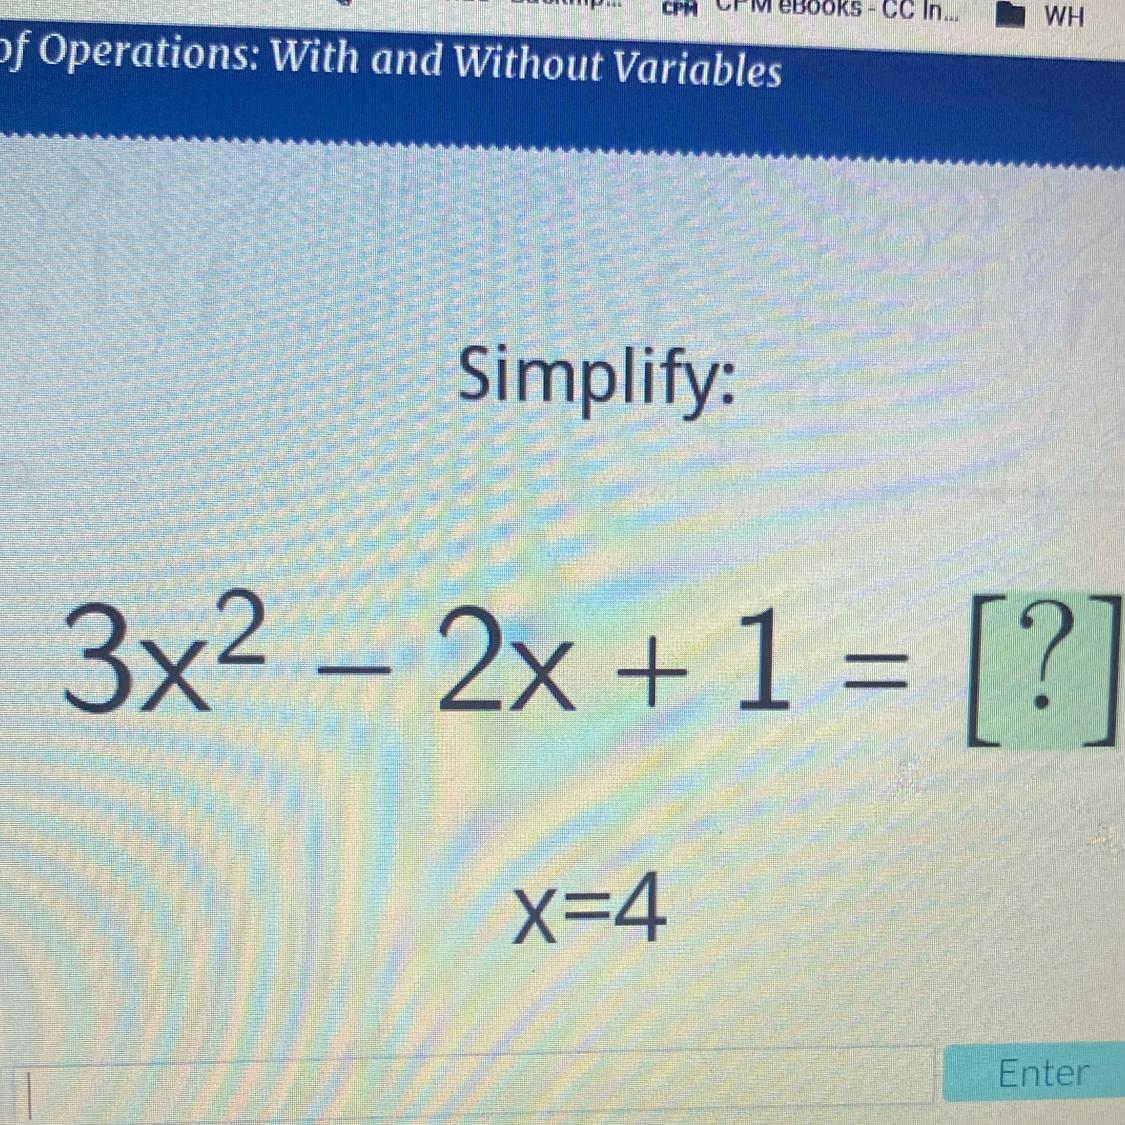 Simplify:3x2 2x + 1 = [?]x=4